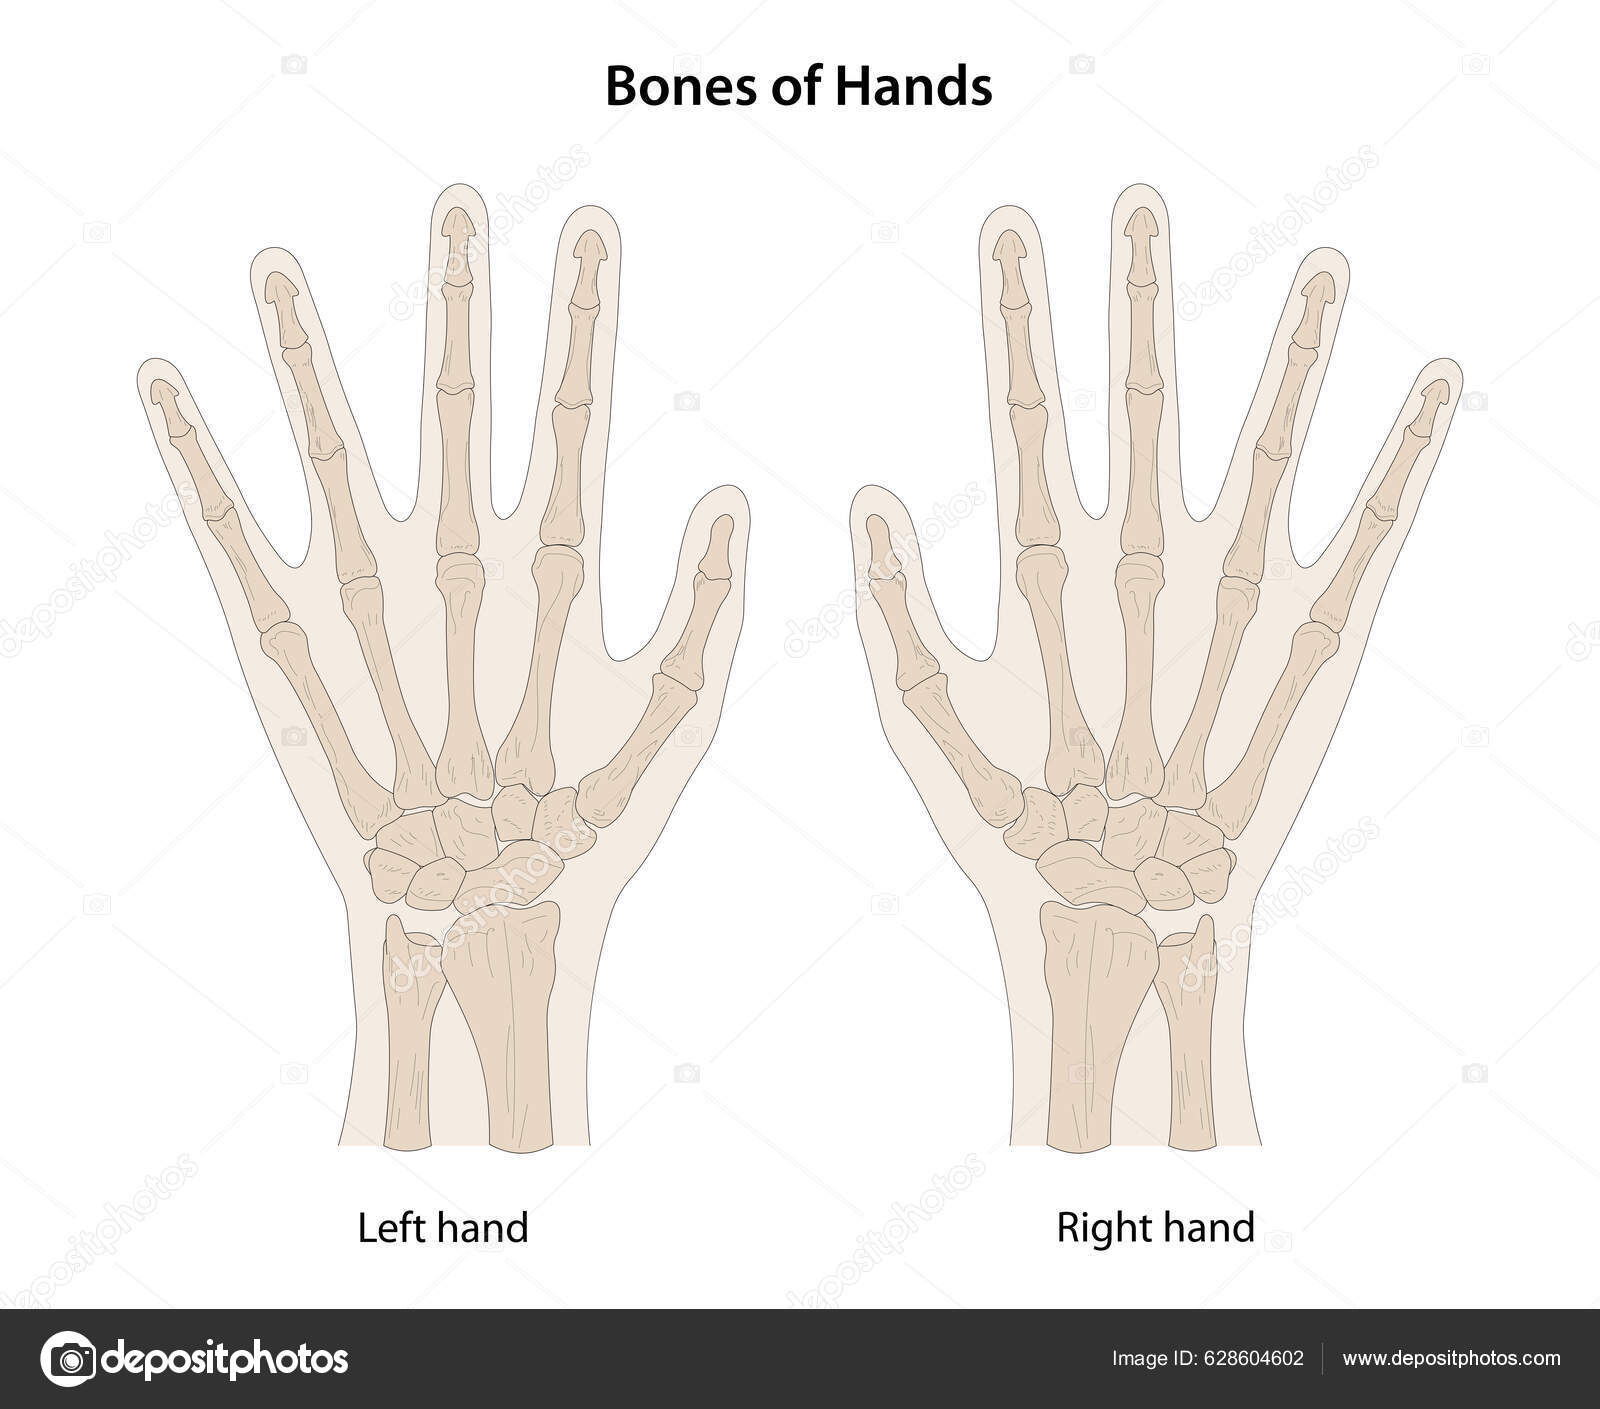 dorsal hand